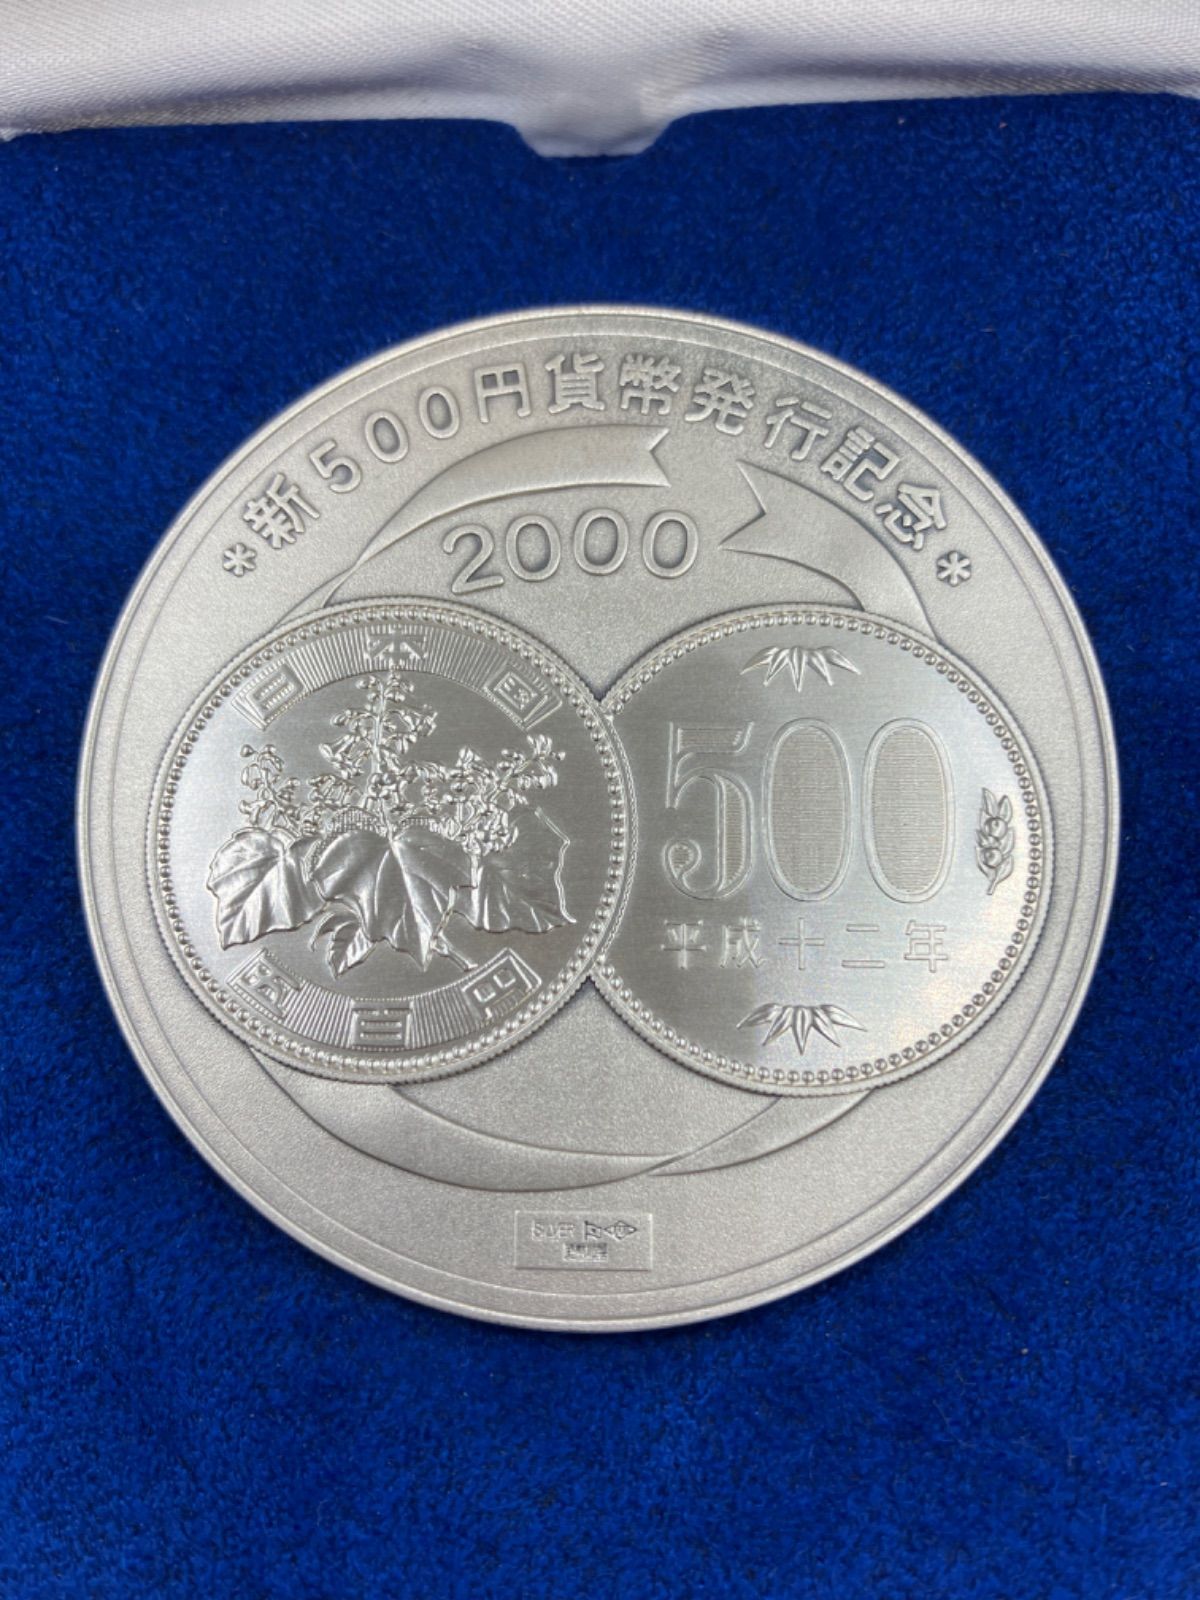 500円白銅貨幣発行記念メダル 1982年 純銀製 銀メダル 記念メダル 